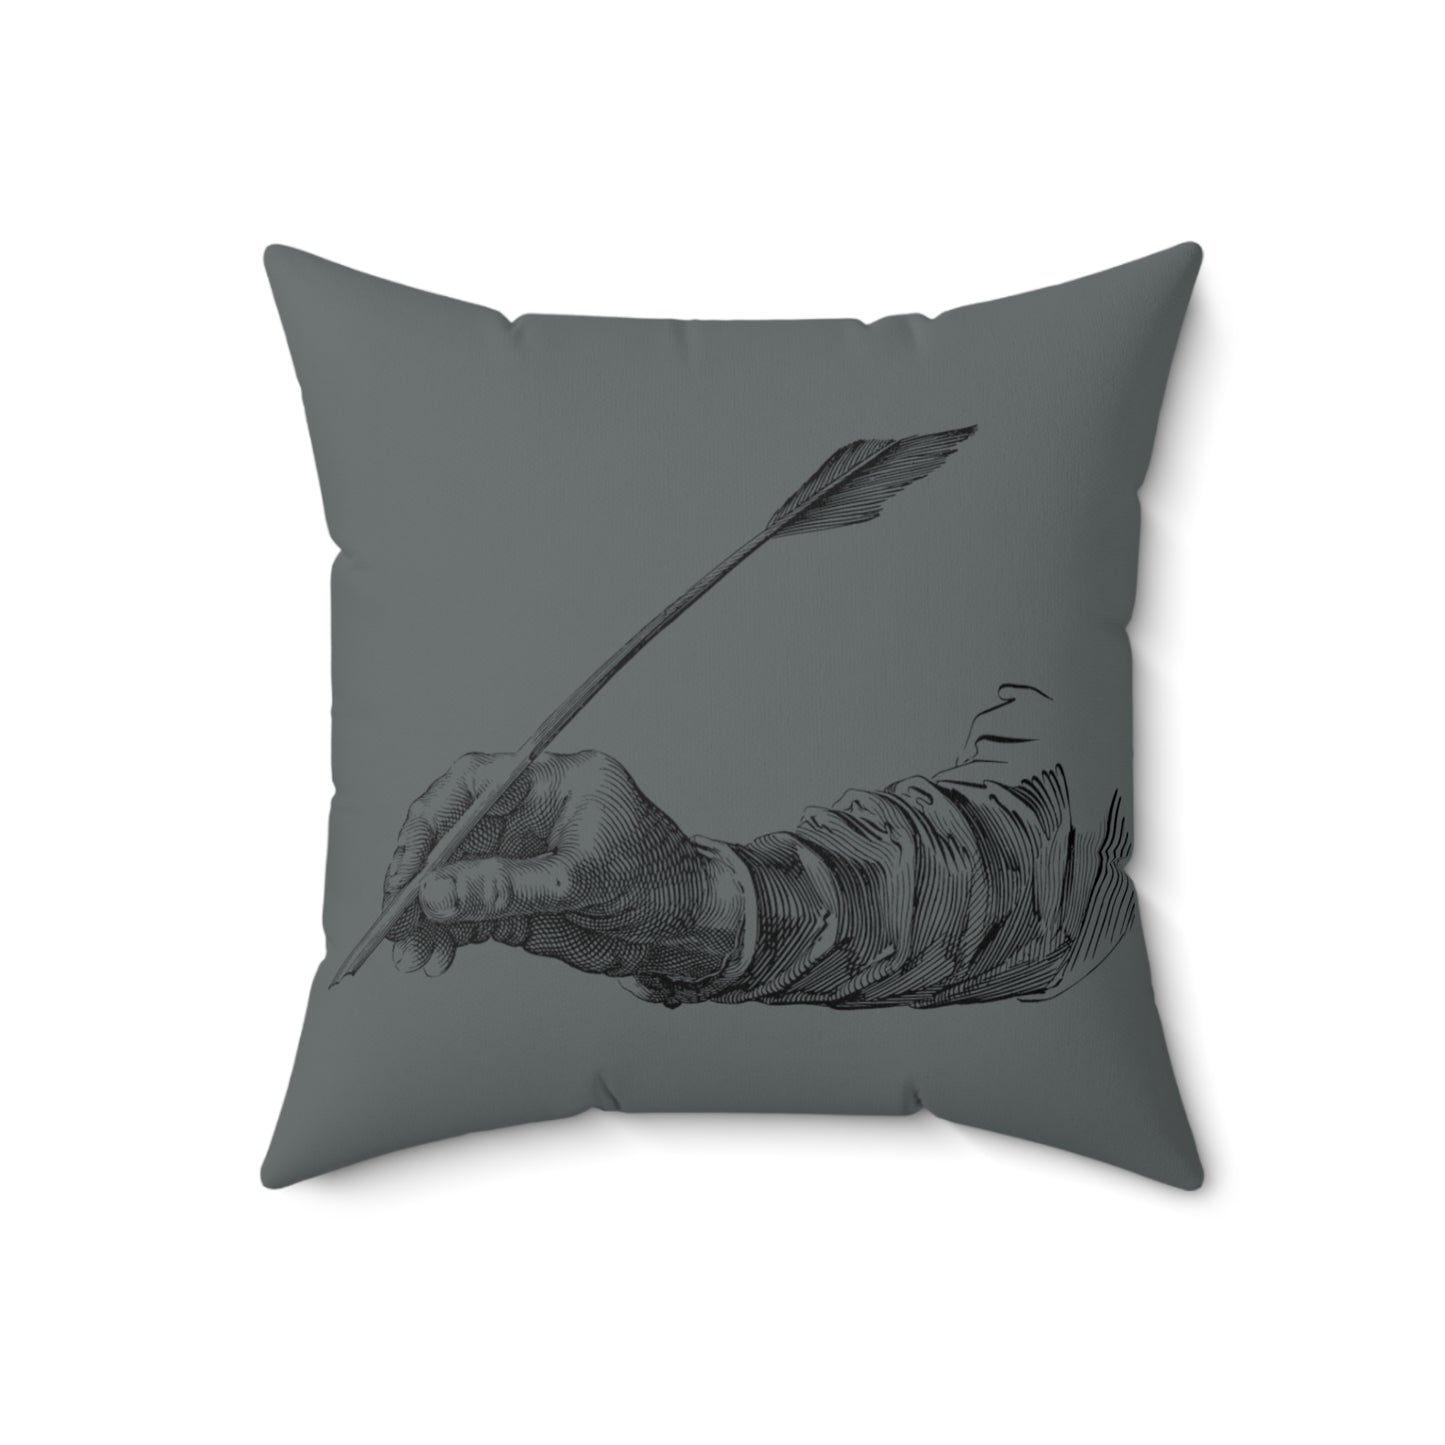 Spun Polyester Square Pillow: Writing Dark Grey